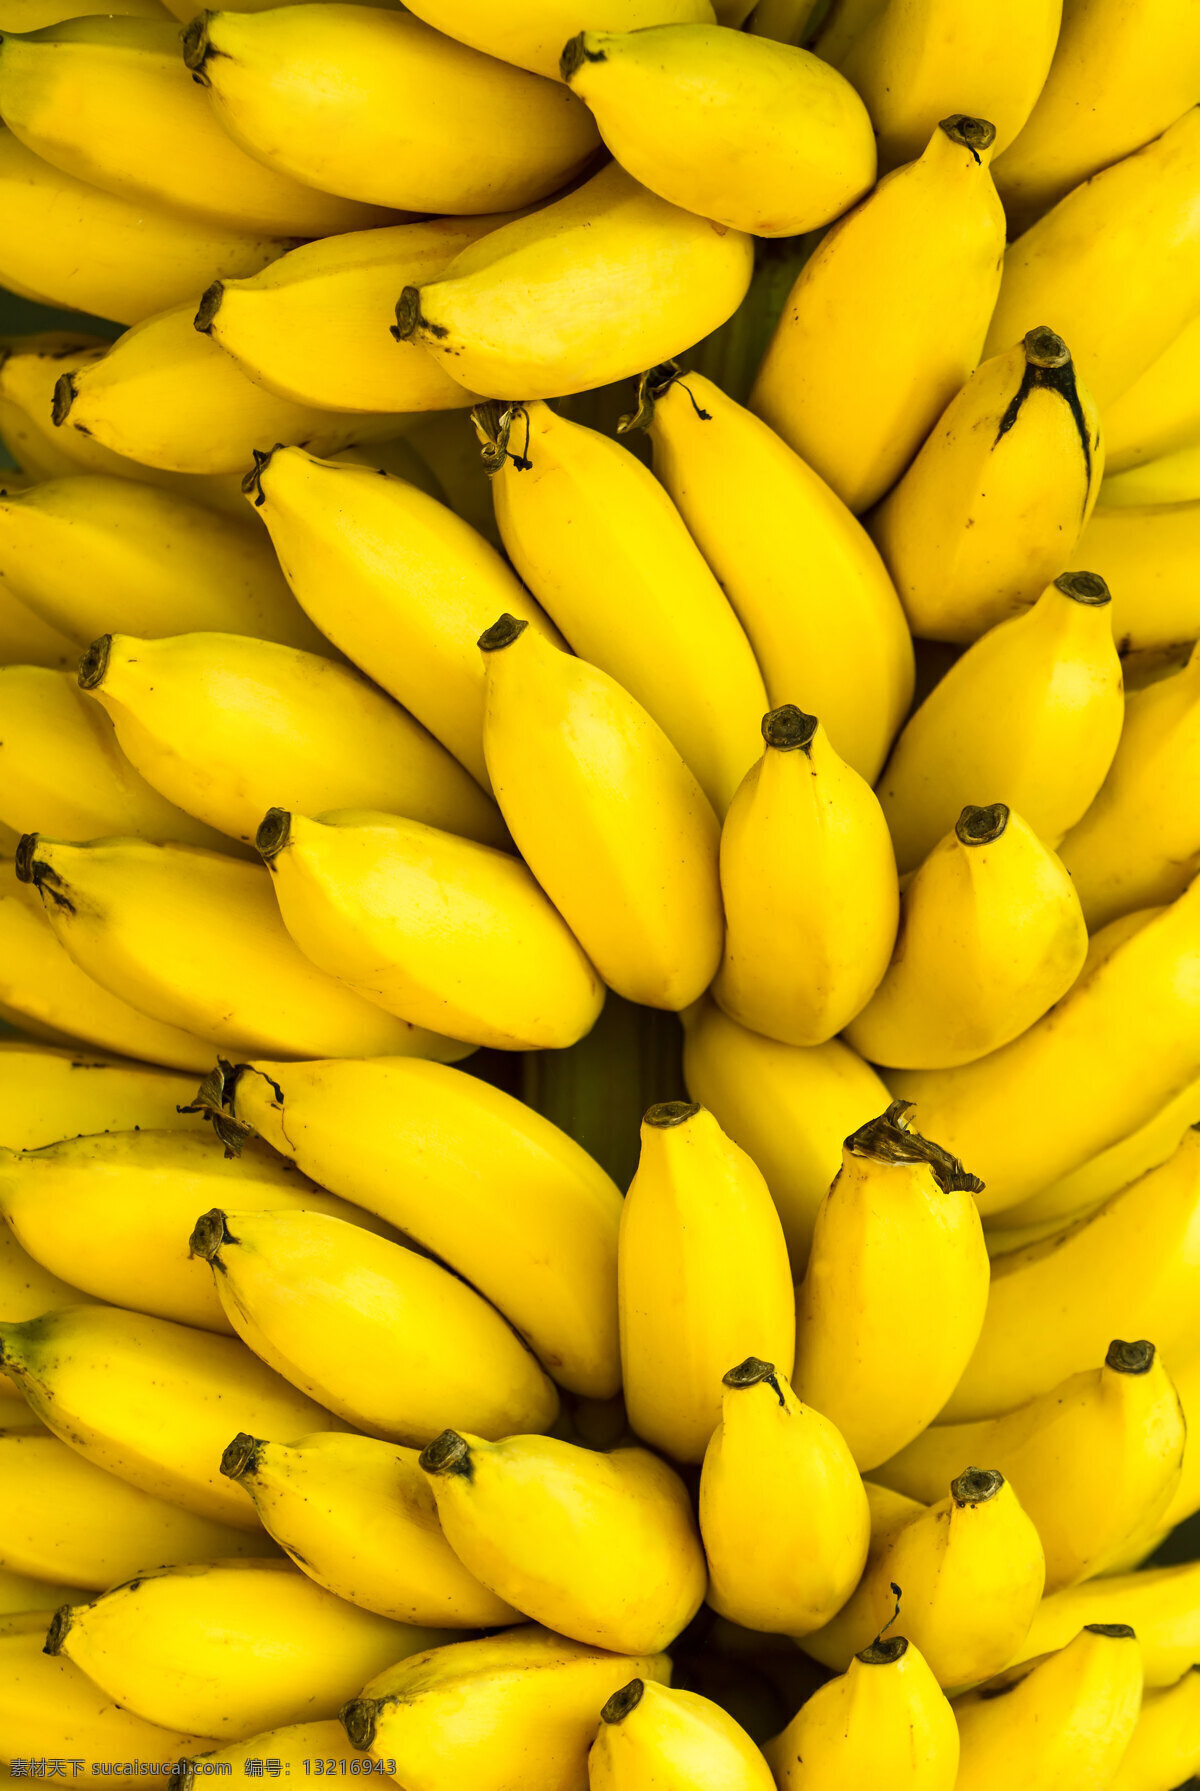 香蕉高清 香蕉 香蕉背景 香蕉摄影 水果 水果摄影 新鲜水果 水果广告 食物 水果蔬菜 餐饮美食 黄色